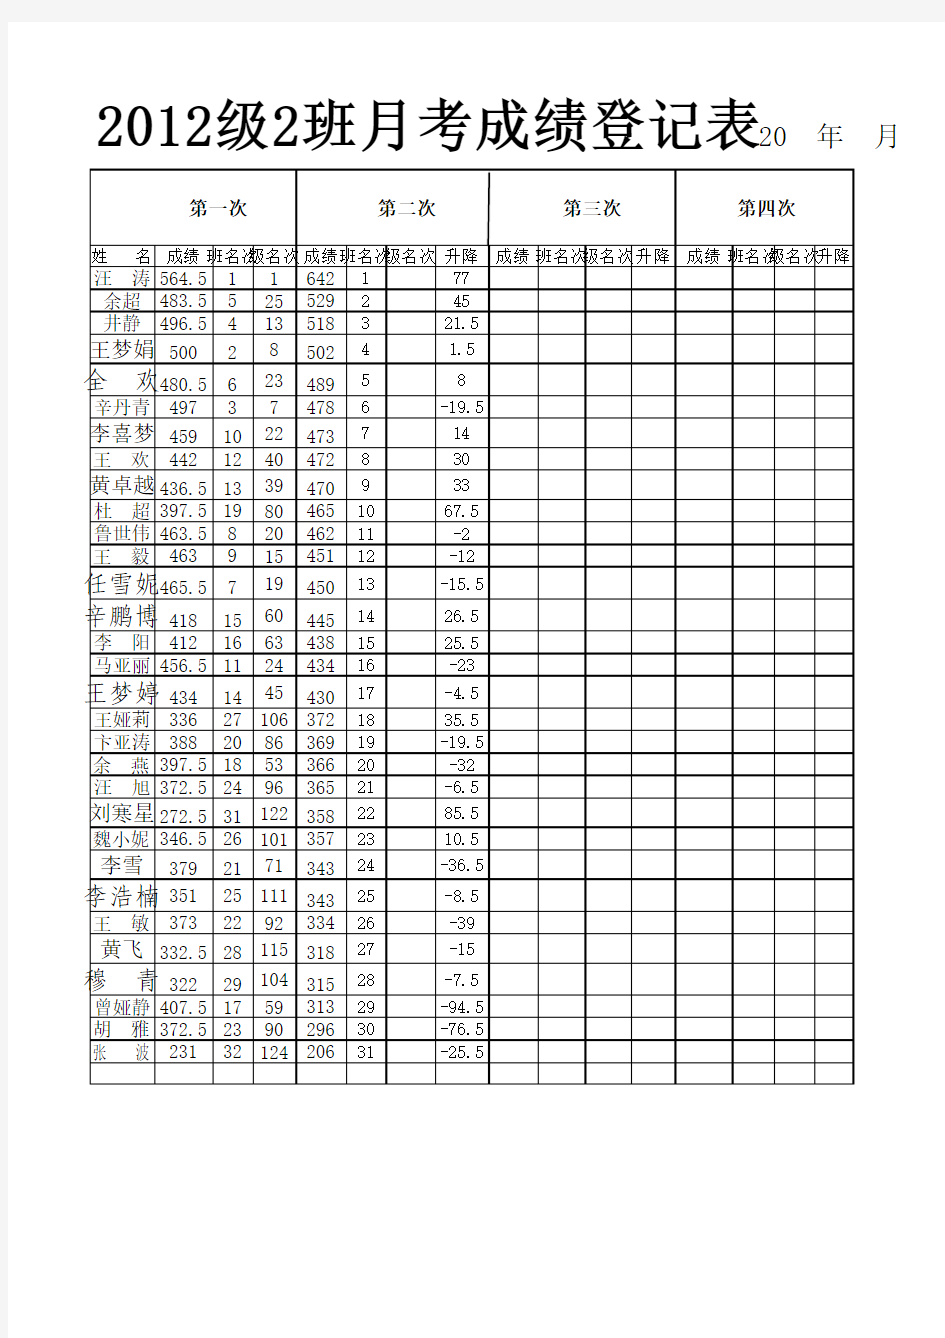 2012级2班月考成绩登记表